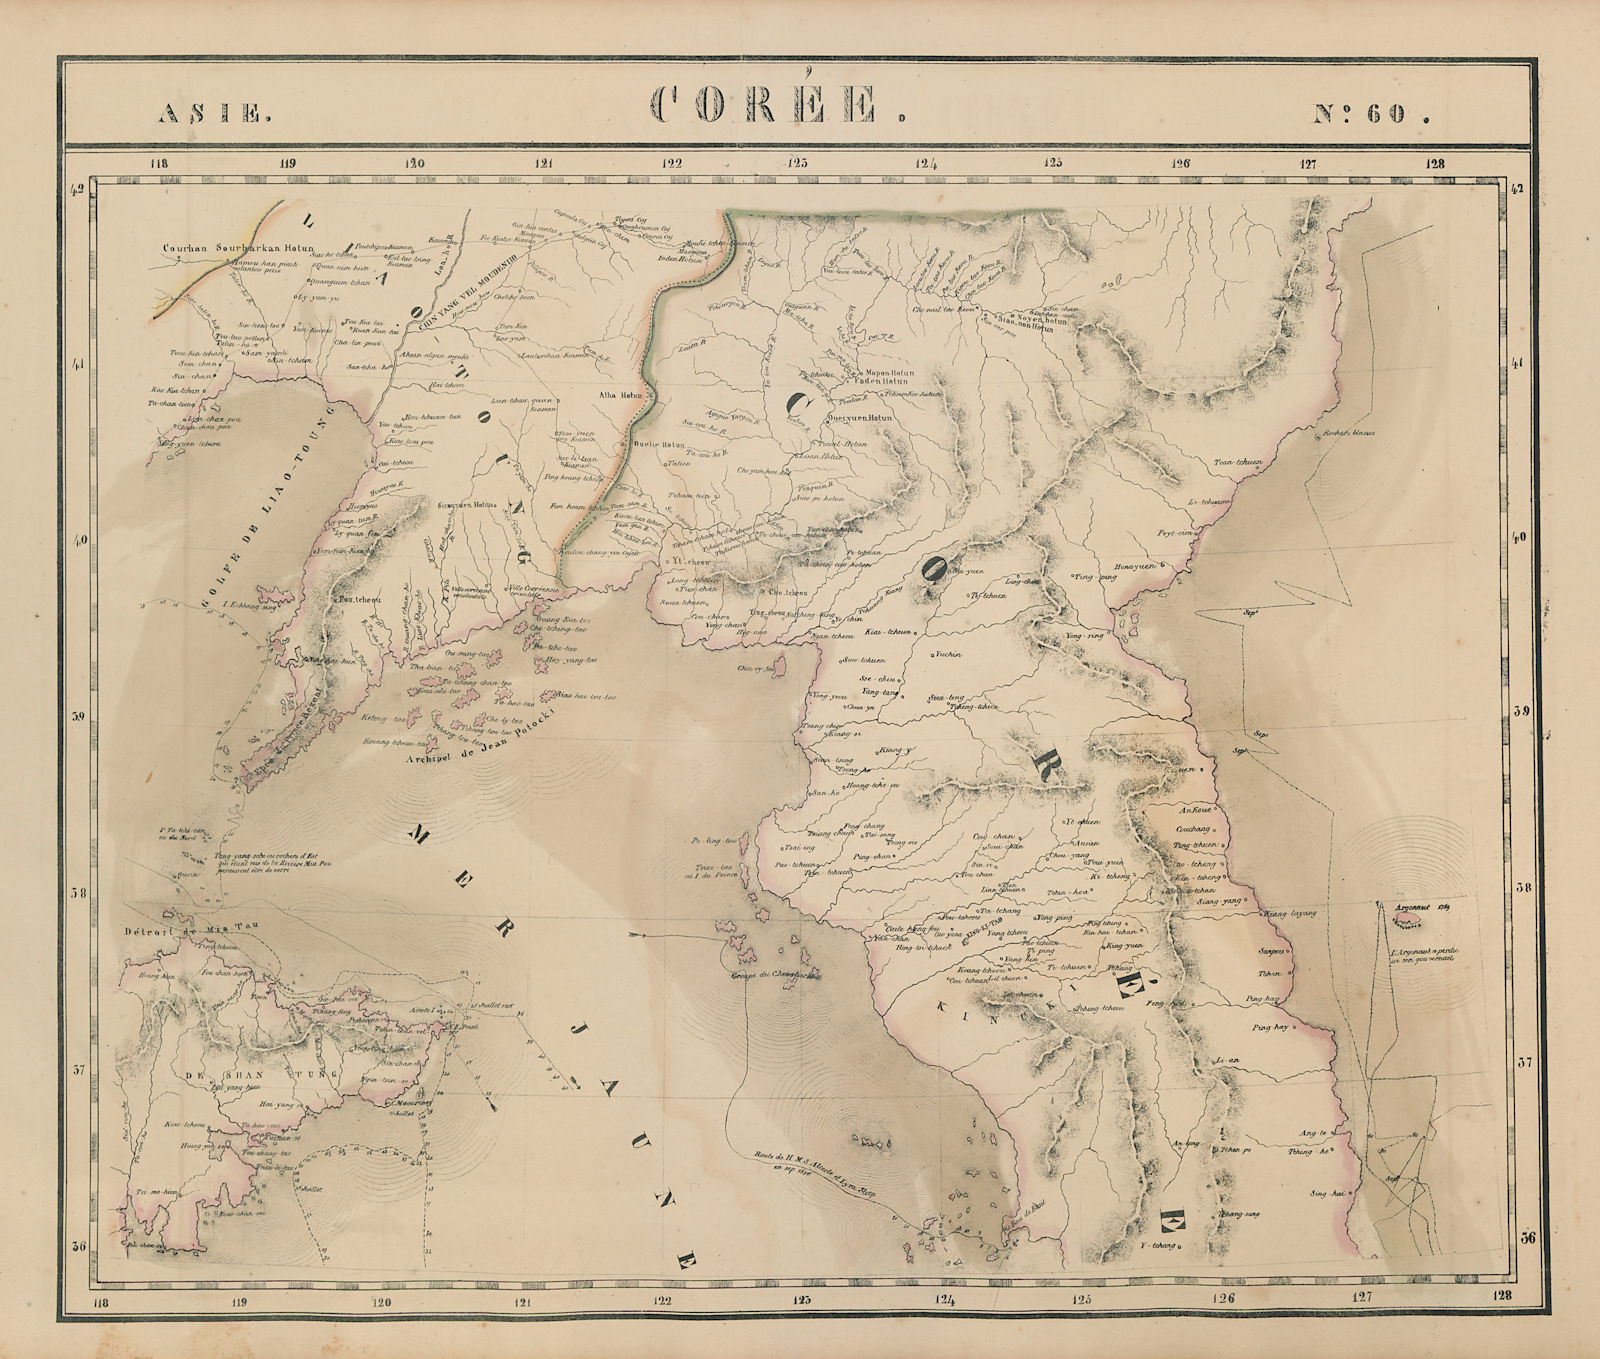 Asie. Corée #60 Korea China. Eastern Liaoning & Shandong. VANDERMAELEN 1827 map